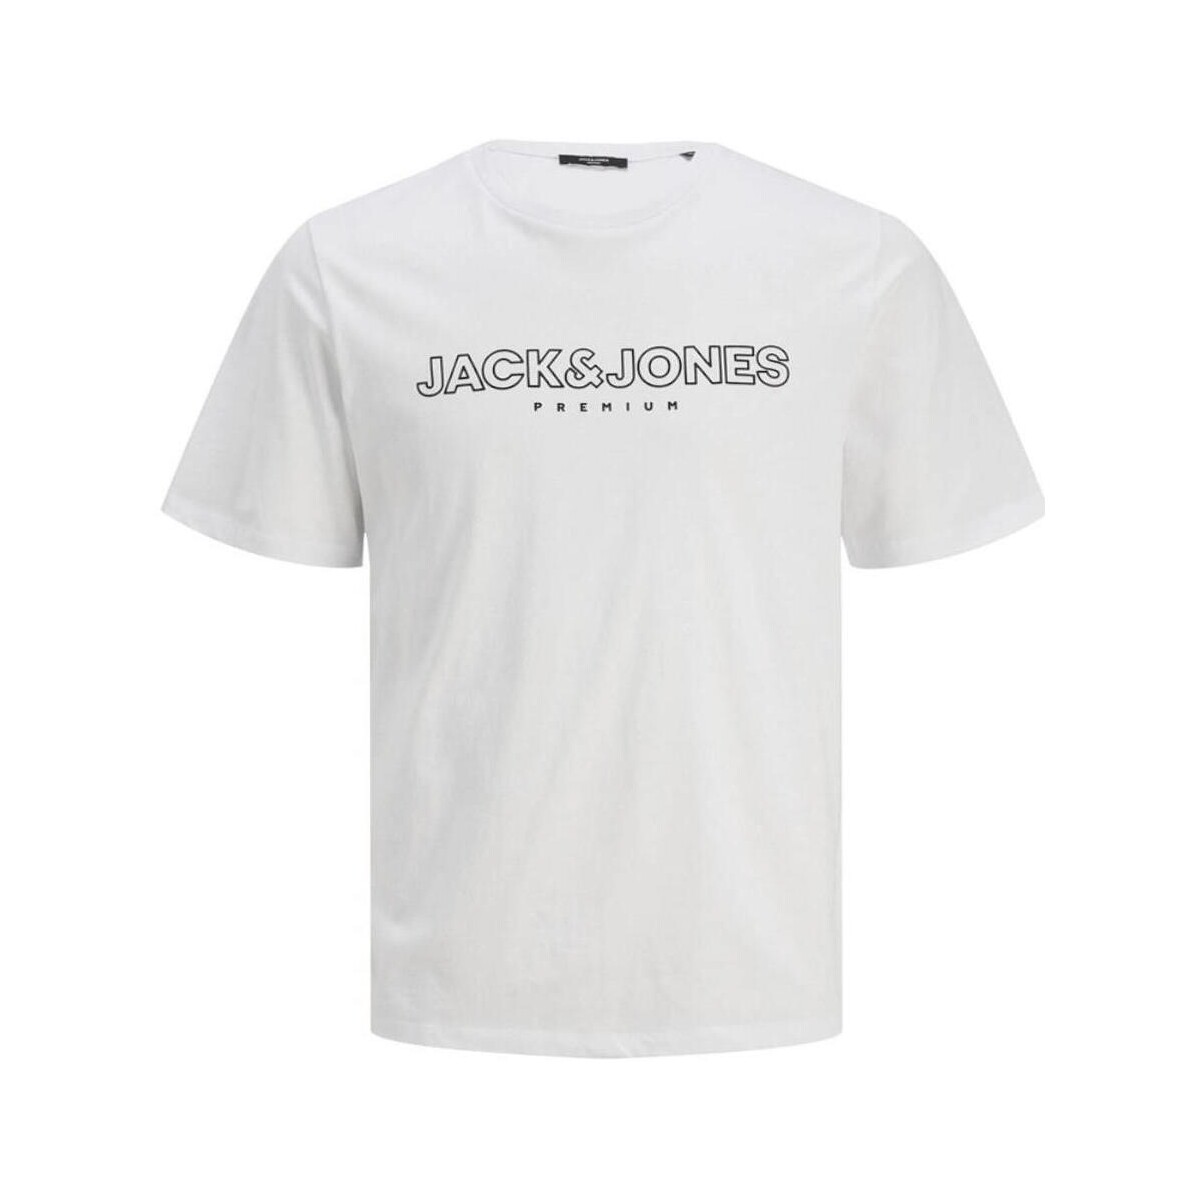 textil Herre T-shirts m. korte ærmer Jack & Jones  Hvid